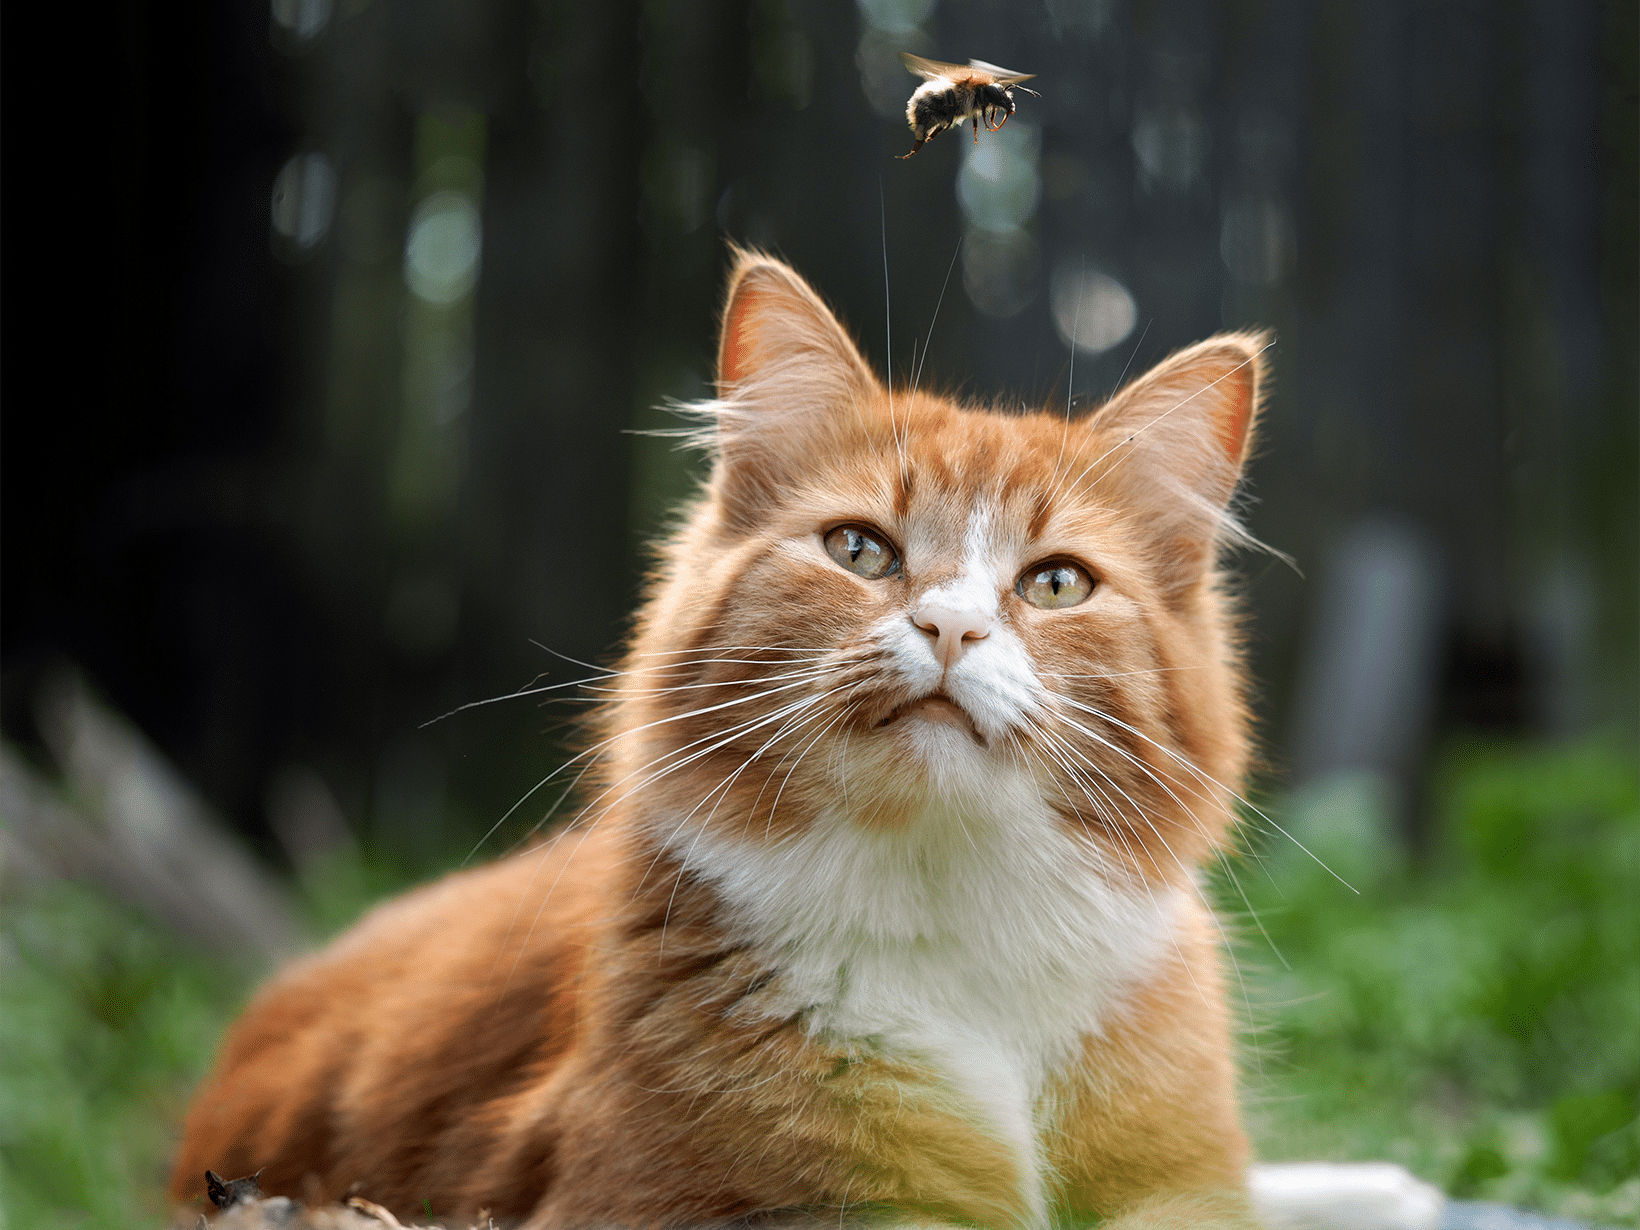 Bijensteek symptomen bij een kat